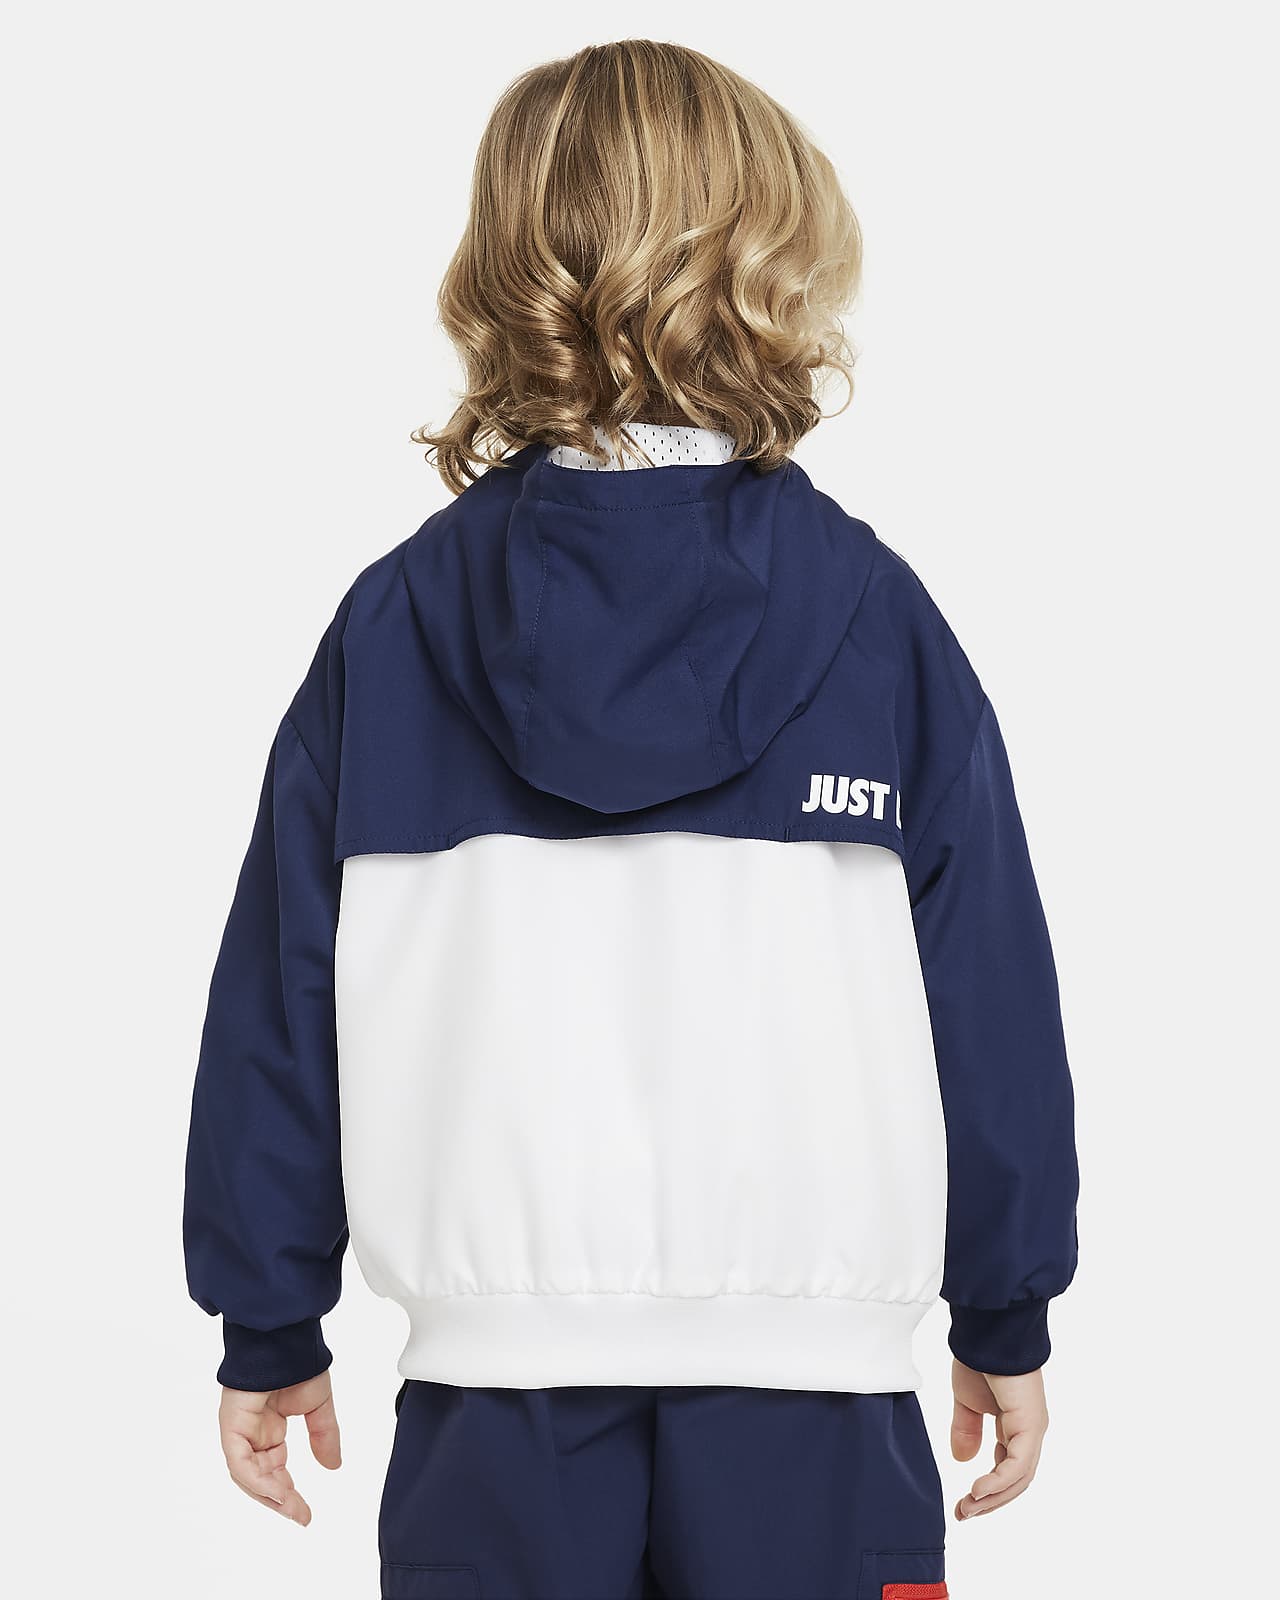 Nike Sportswear Windrunner Little Kids' Full-Zip Jacket